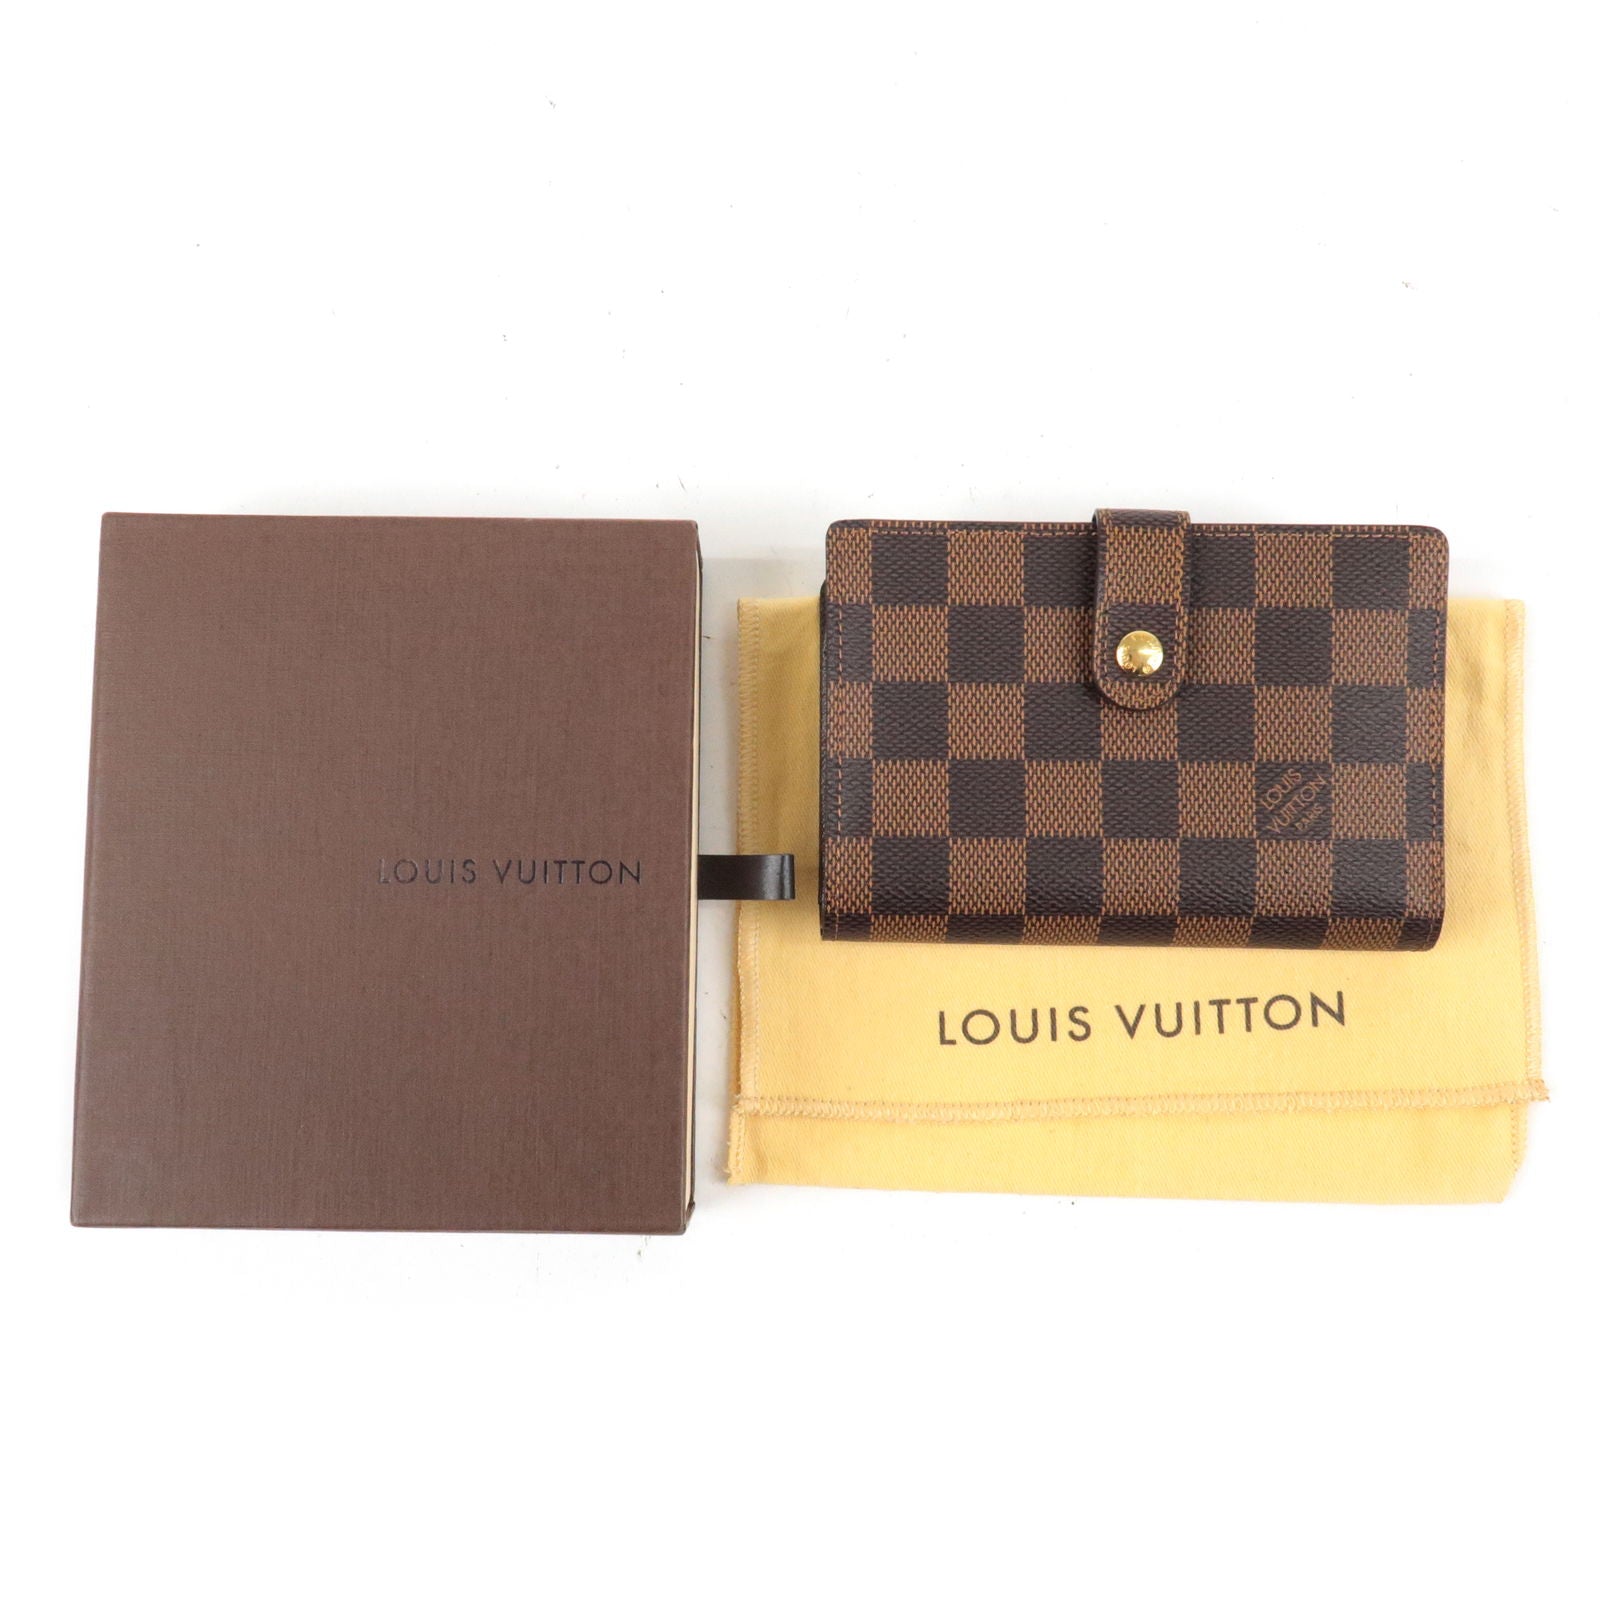 Pre-Owned Louis Vuitton Wallet Portefeuille Viennois Black Mini